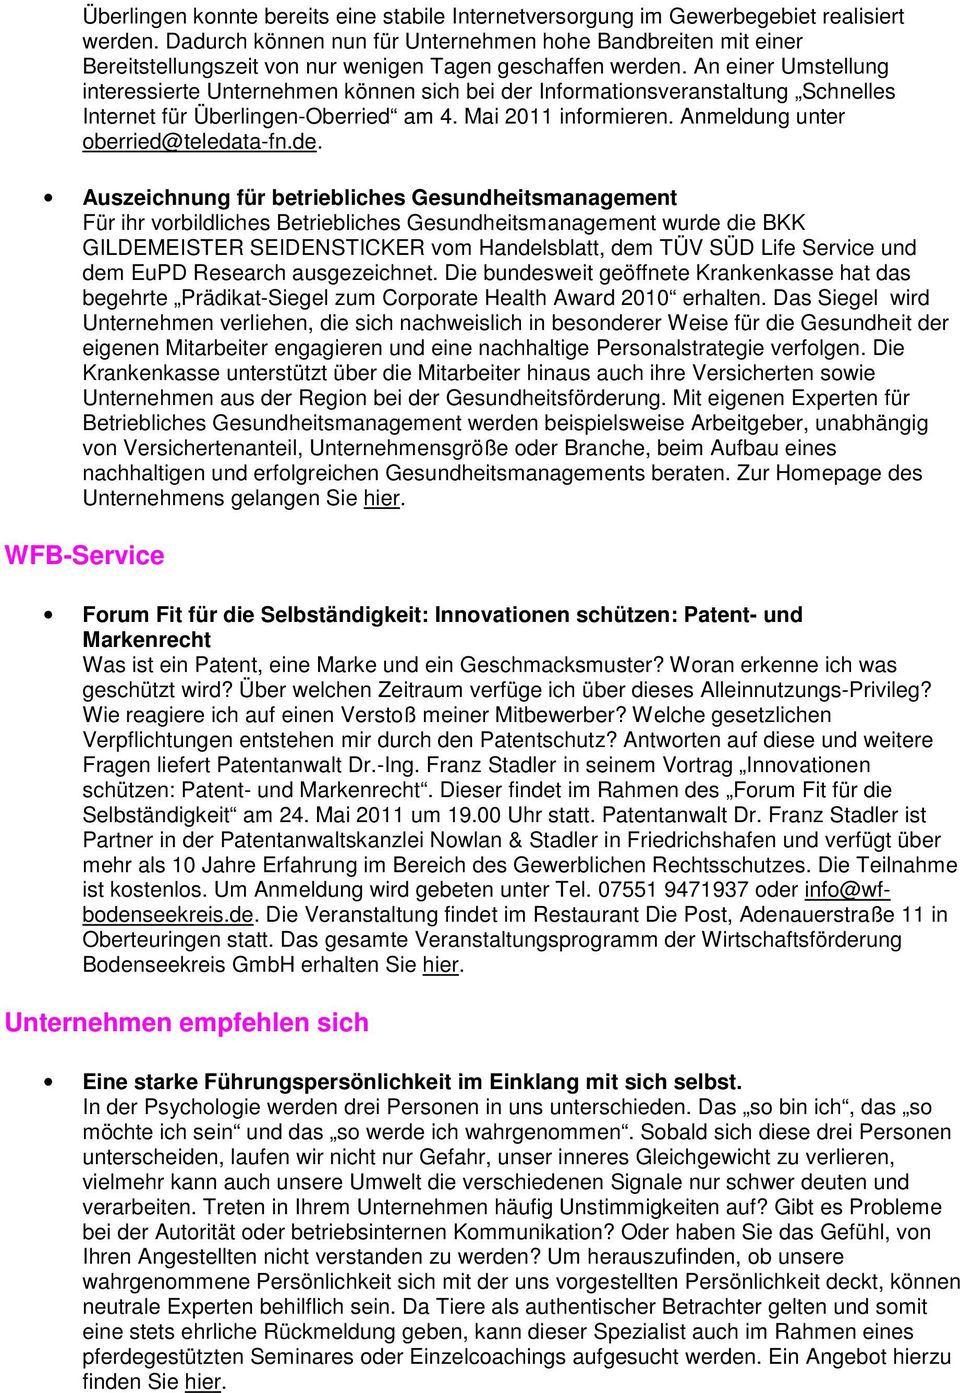 An einer Umstellung interessierte Unternehmen können sich bei der Informationsveranstaltung Schnelles Internet für Überlingen-Oberried am 4. Mai 2011 informieren. Anmeldung unter oberried@teledata-fn.